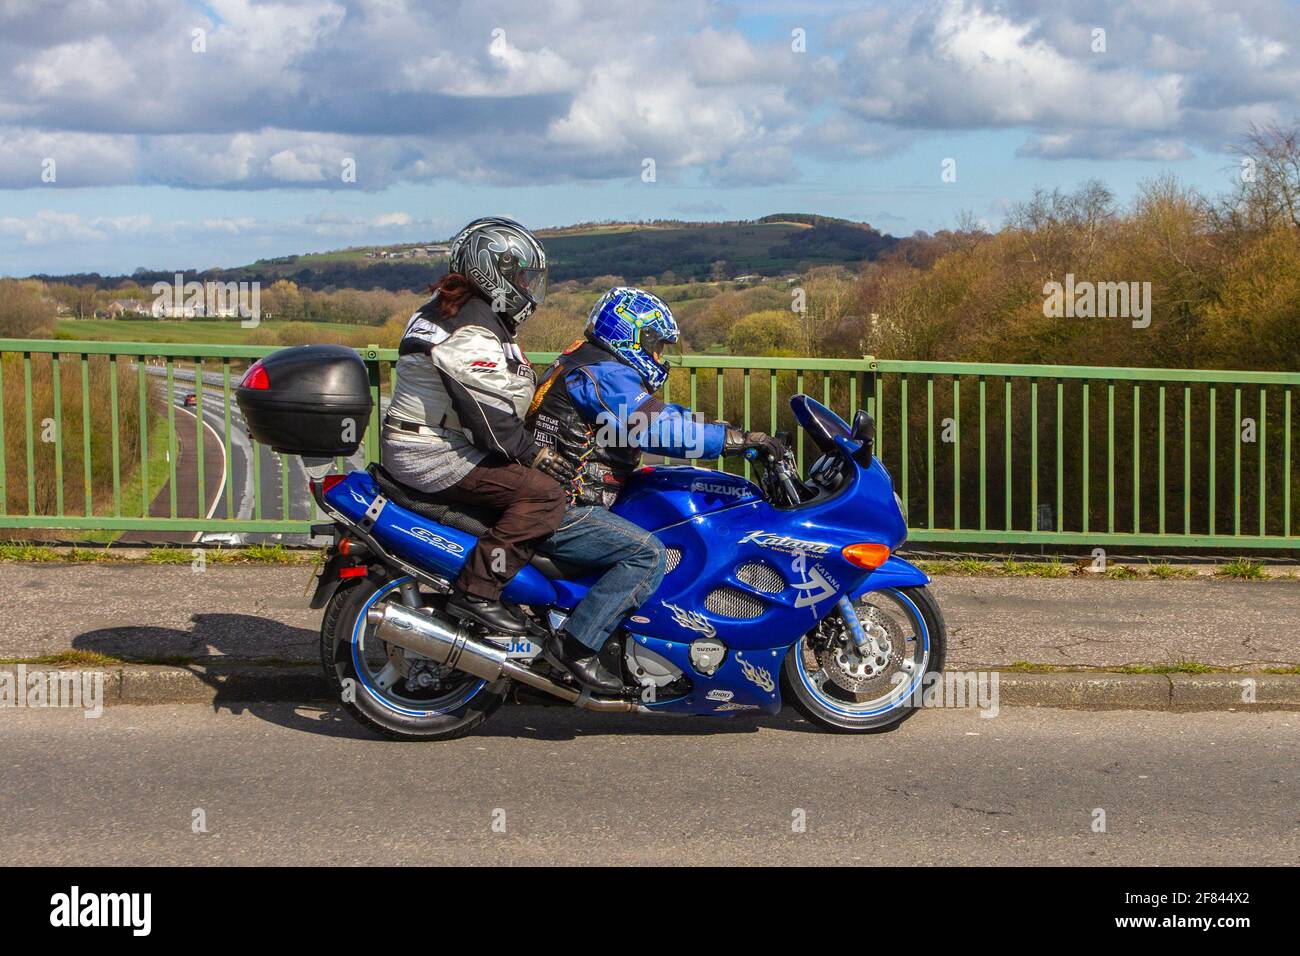 1998 90s n90 blu Suzuki Katana 600cc super sport; motociclista; trasporto a due ruote, motocicli, veicoli su strade britanniche, motociclette, motociclisti a Manchester, Regno Unito Foto Stock